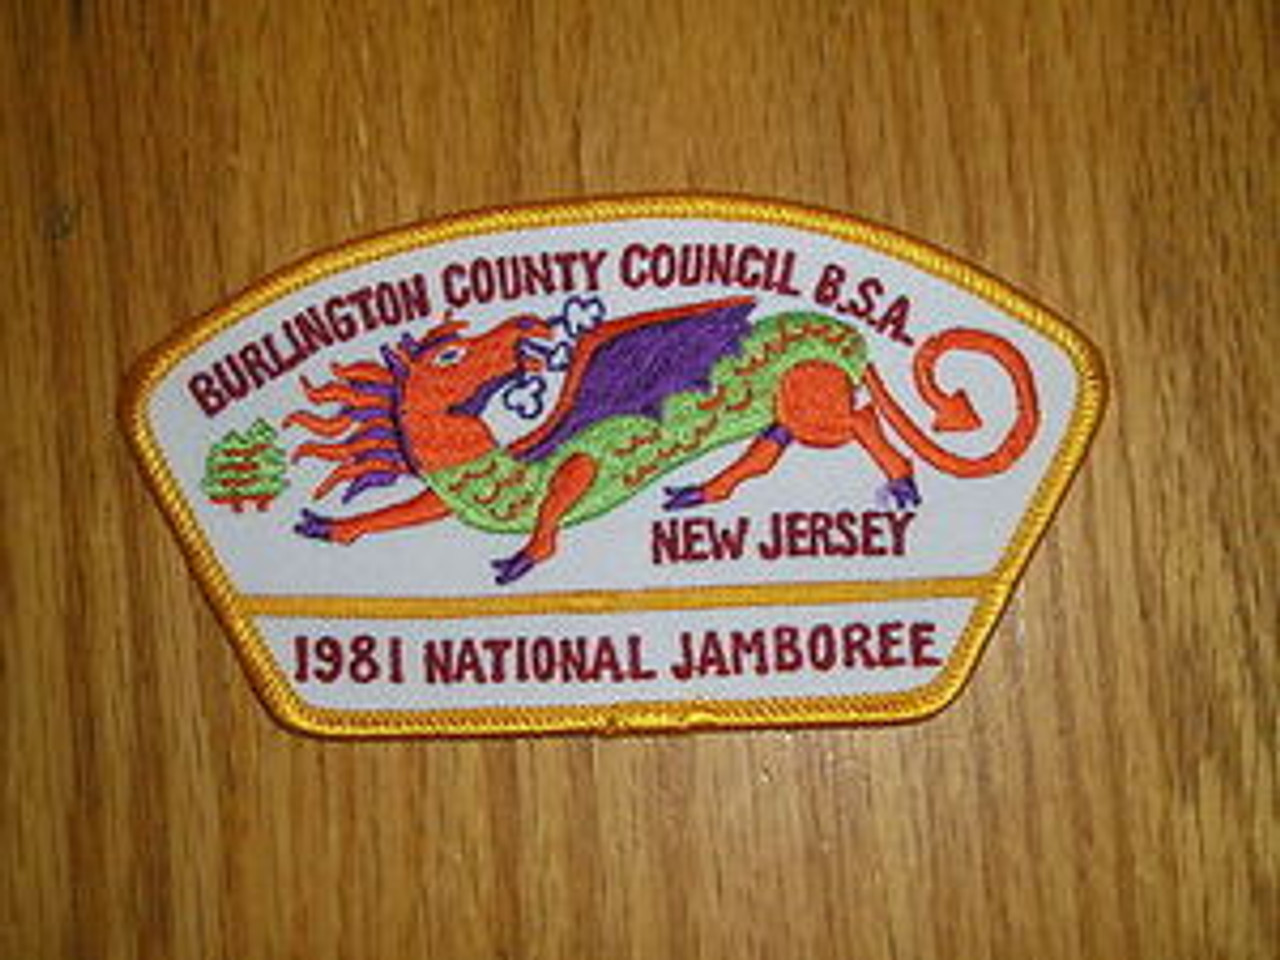 1981 National Jamboree JSP - Burlington County Council